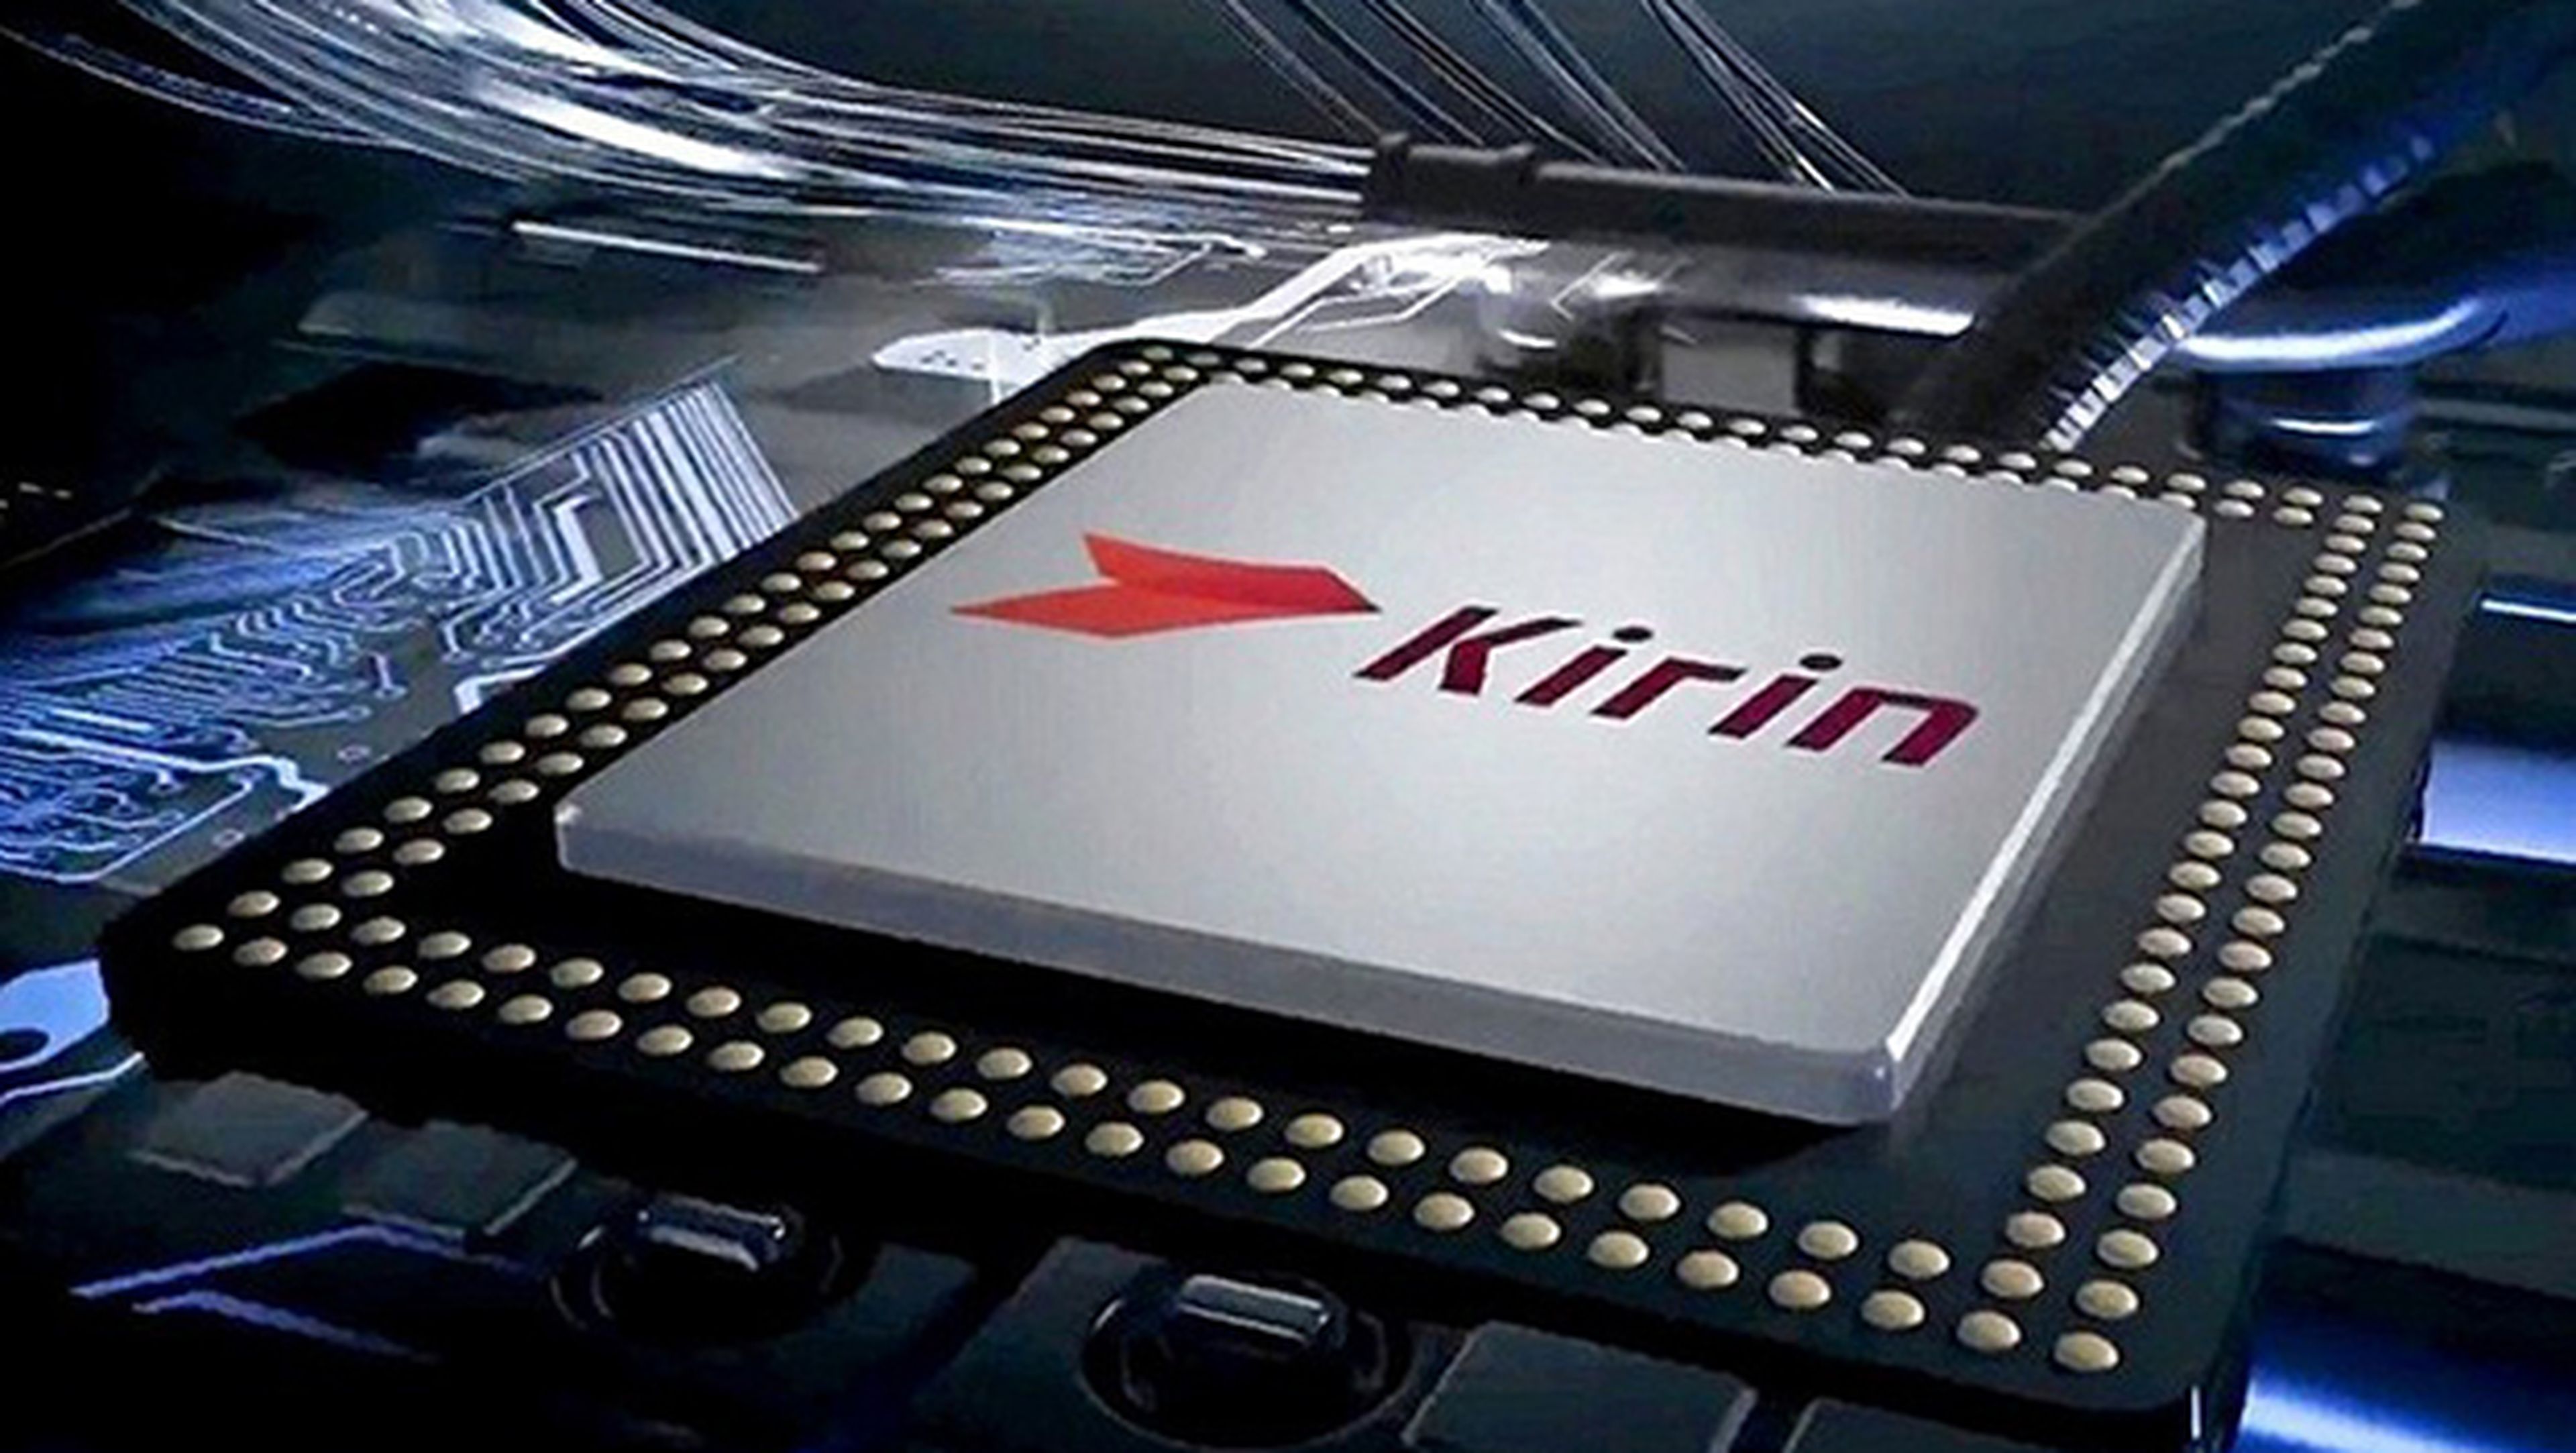 Kirin 970, en producción el nuevo procesador de Huawei